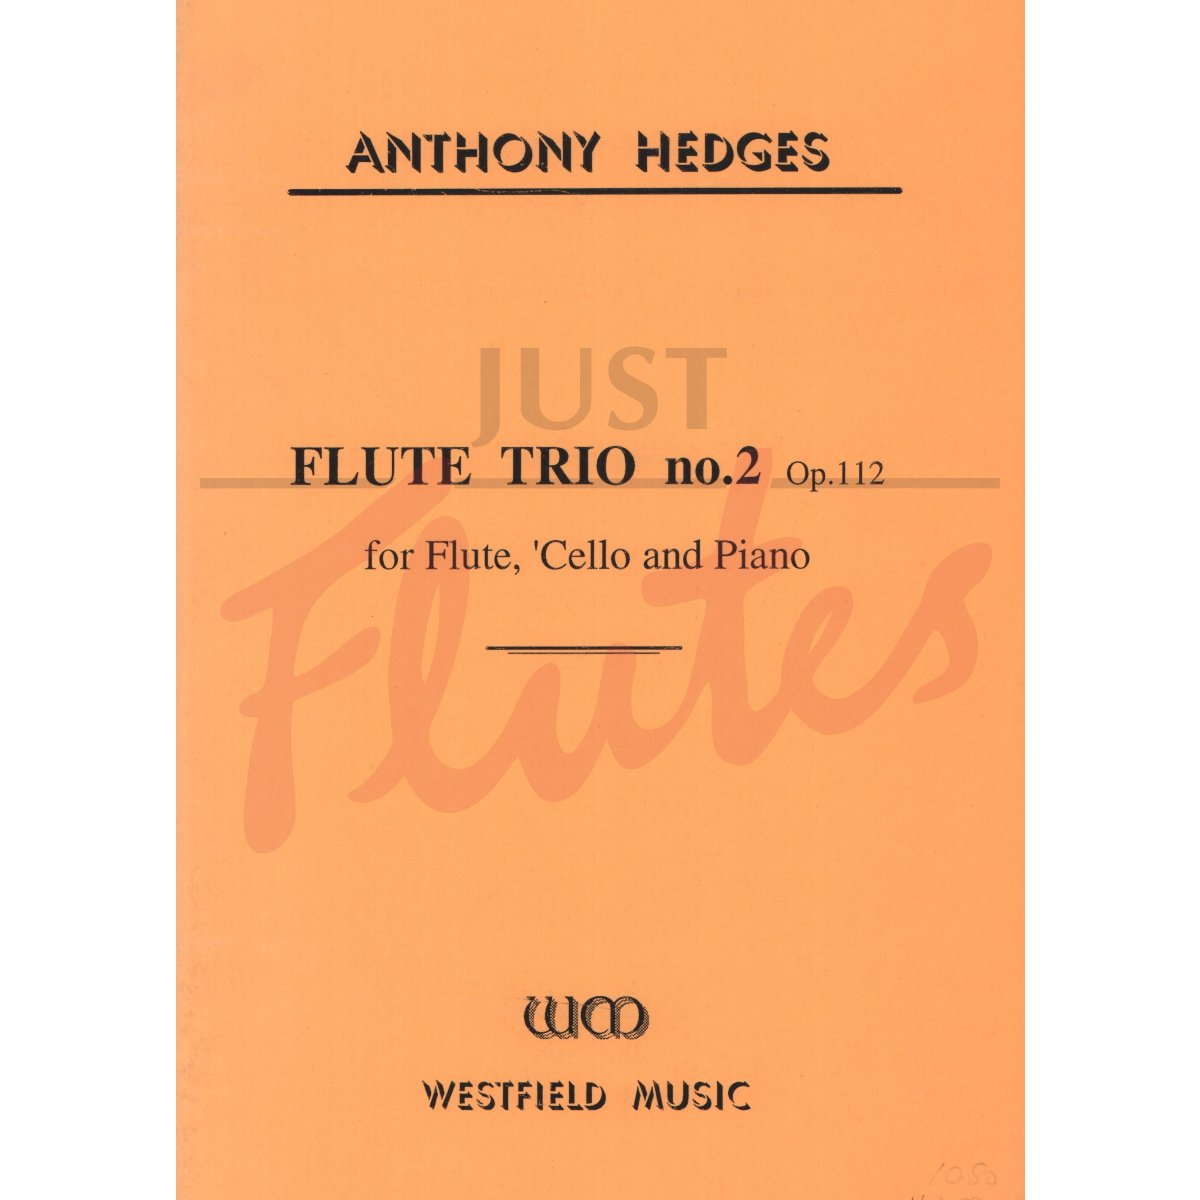 Trio No 2 for Flute, Cello and Piano